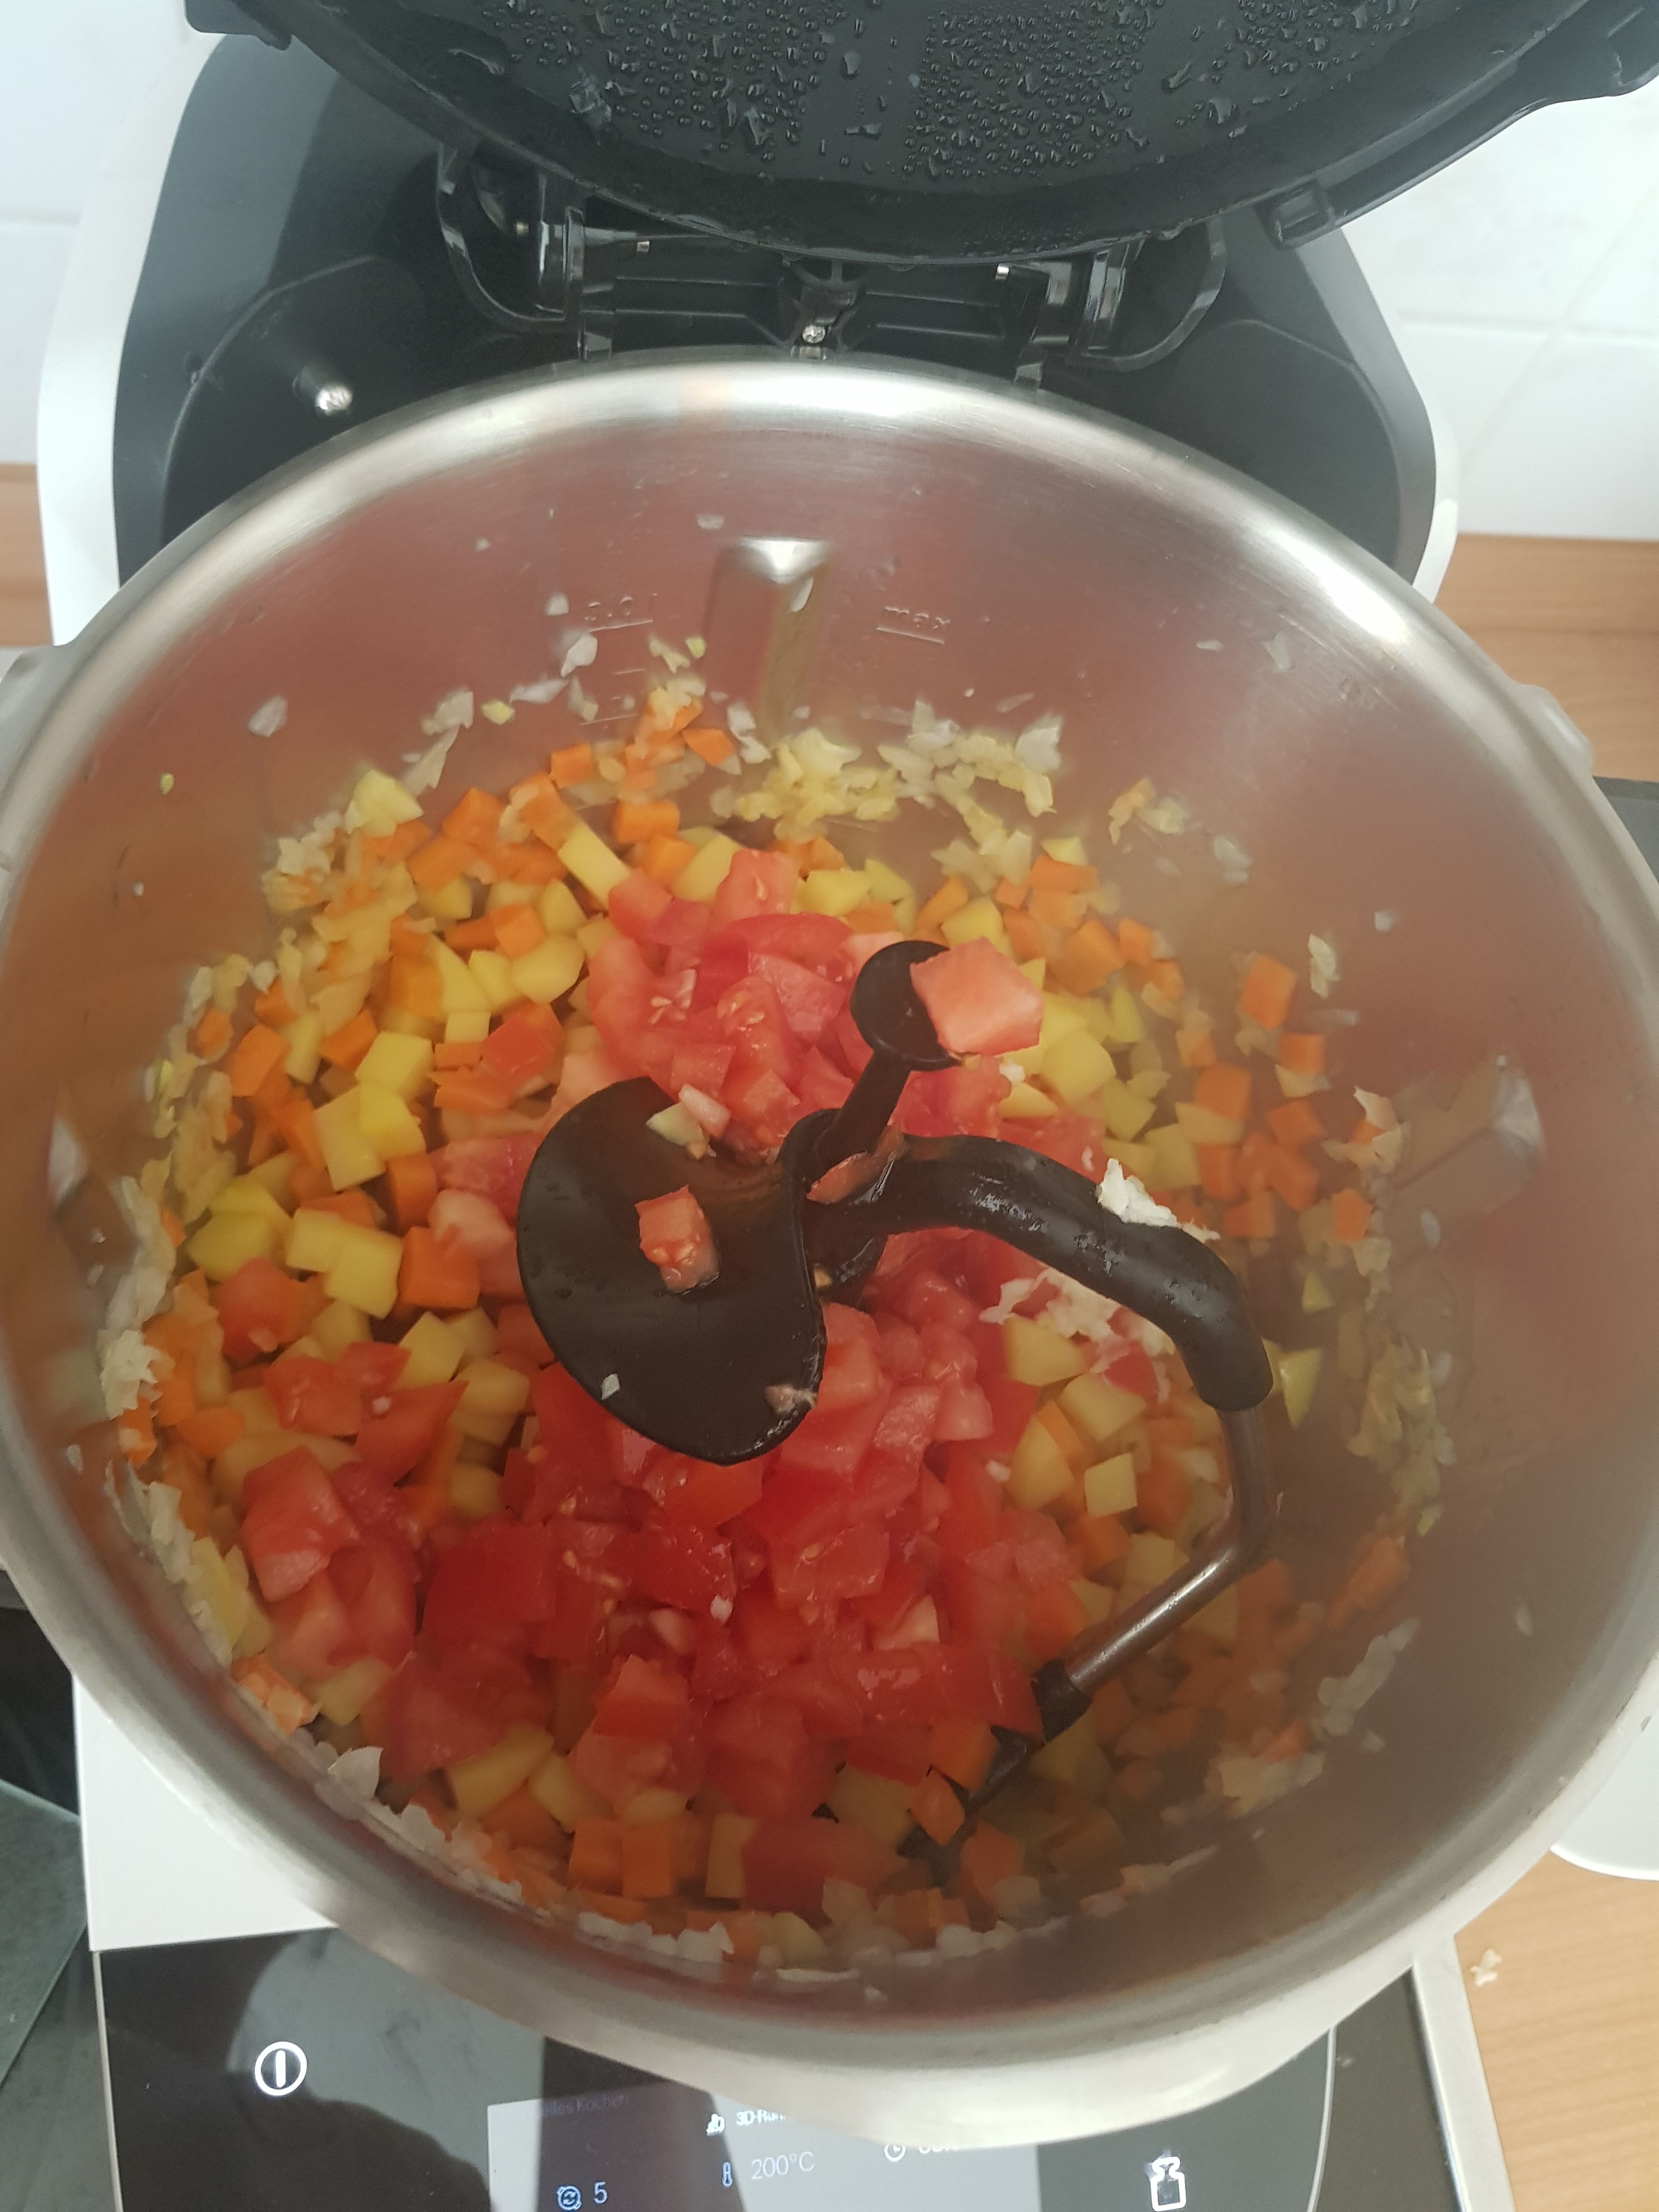 Danach die Tomaten und den Knoblauch (aus der Presse) mit in den Topf geben und bei geschlossenem Deckel, ohne Messbecher, weiter braten (3D-Rührer | Stufe 5 | 160°C | 4 Min.).